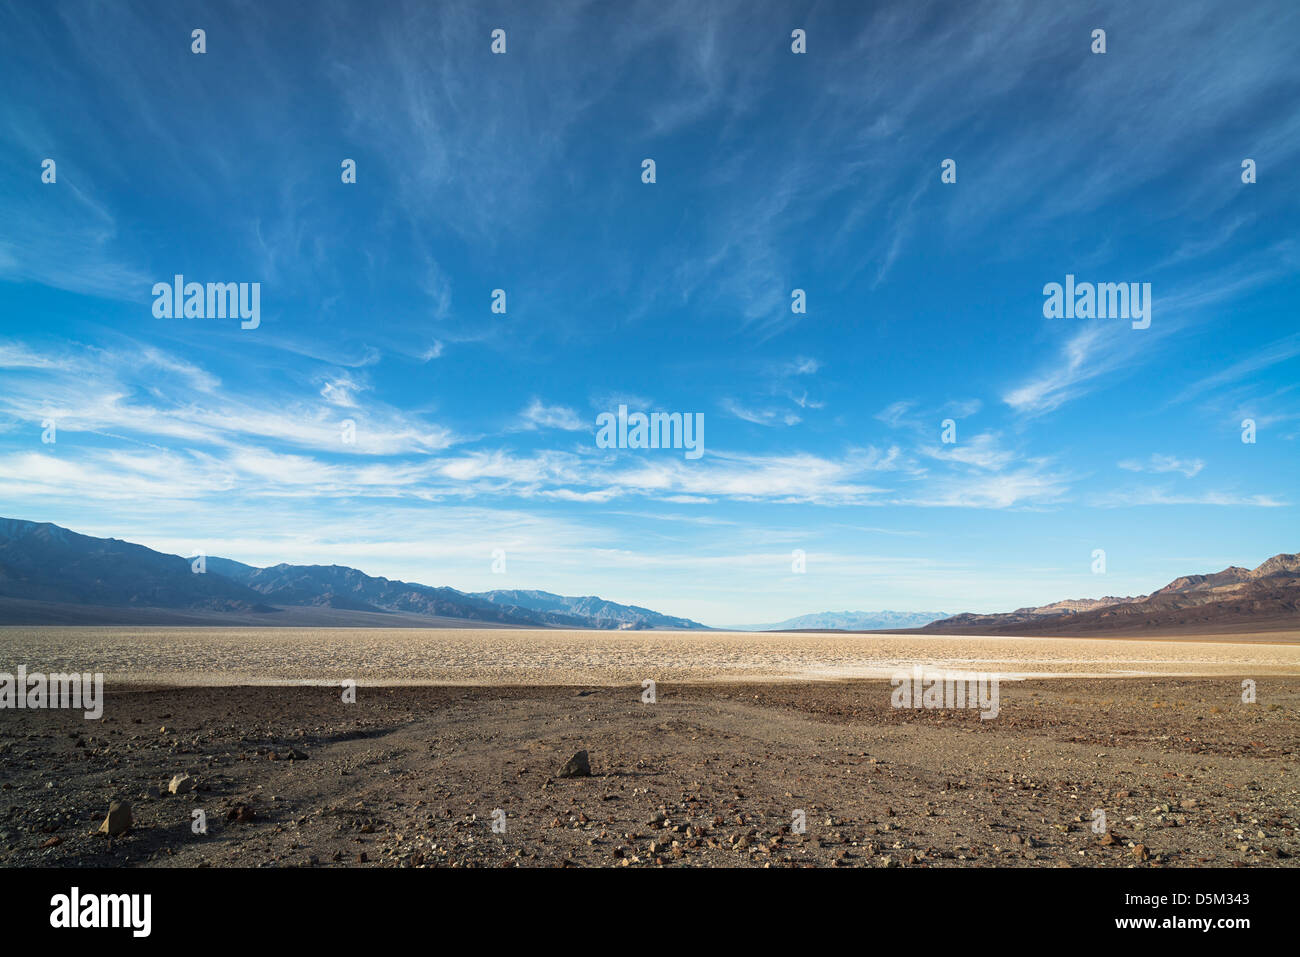 États-unis, Californie, Death Valley, paysage désertique Banque D'Images